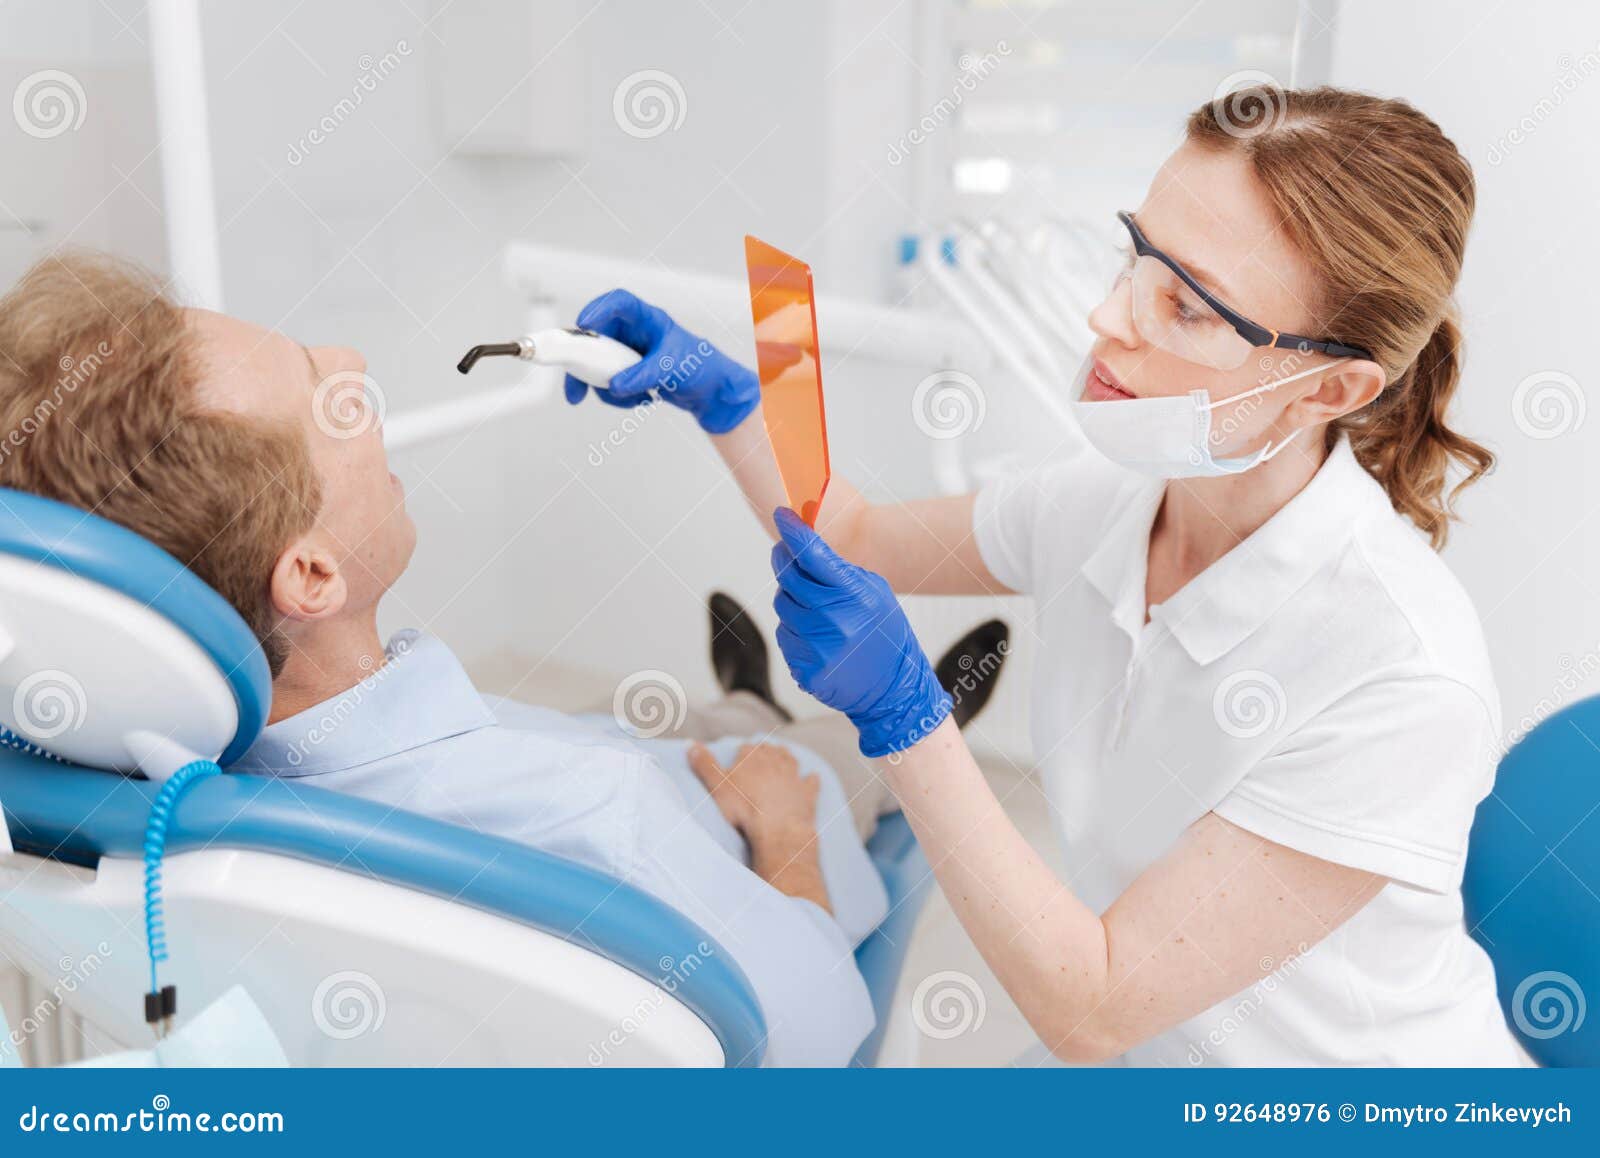 Видно скрупулезный дантист забеливая зубы пациентов. улыбка hollywood Тщательный тщательный квалифицированный доктор используя специальные приборы для защищать ее глаза и делать зубы людей смотря белый